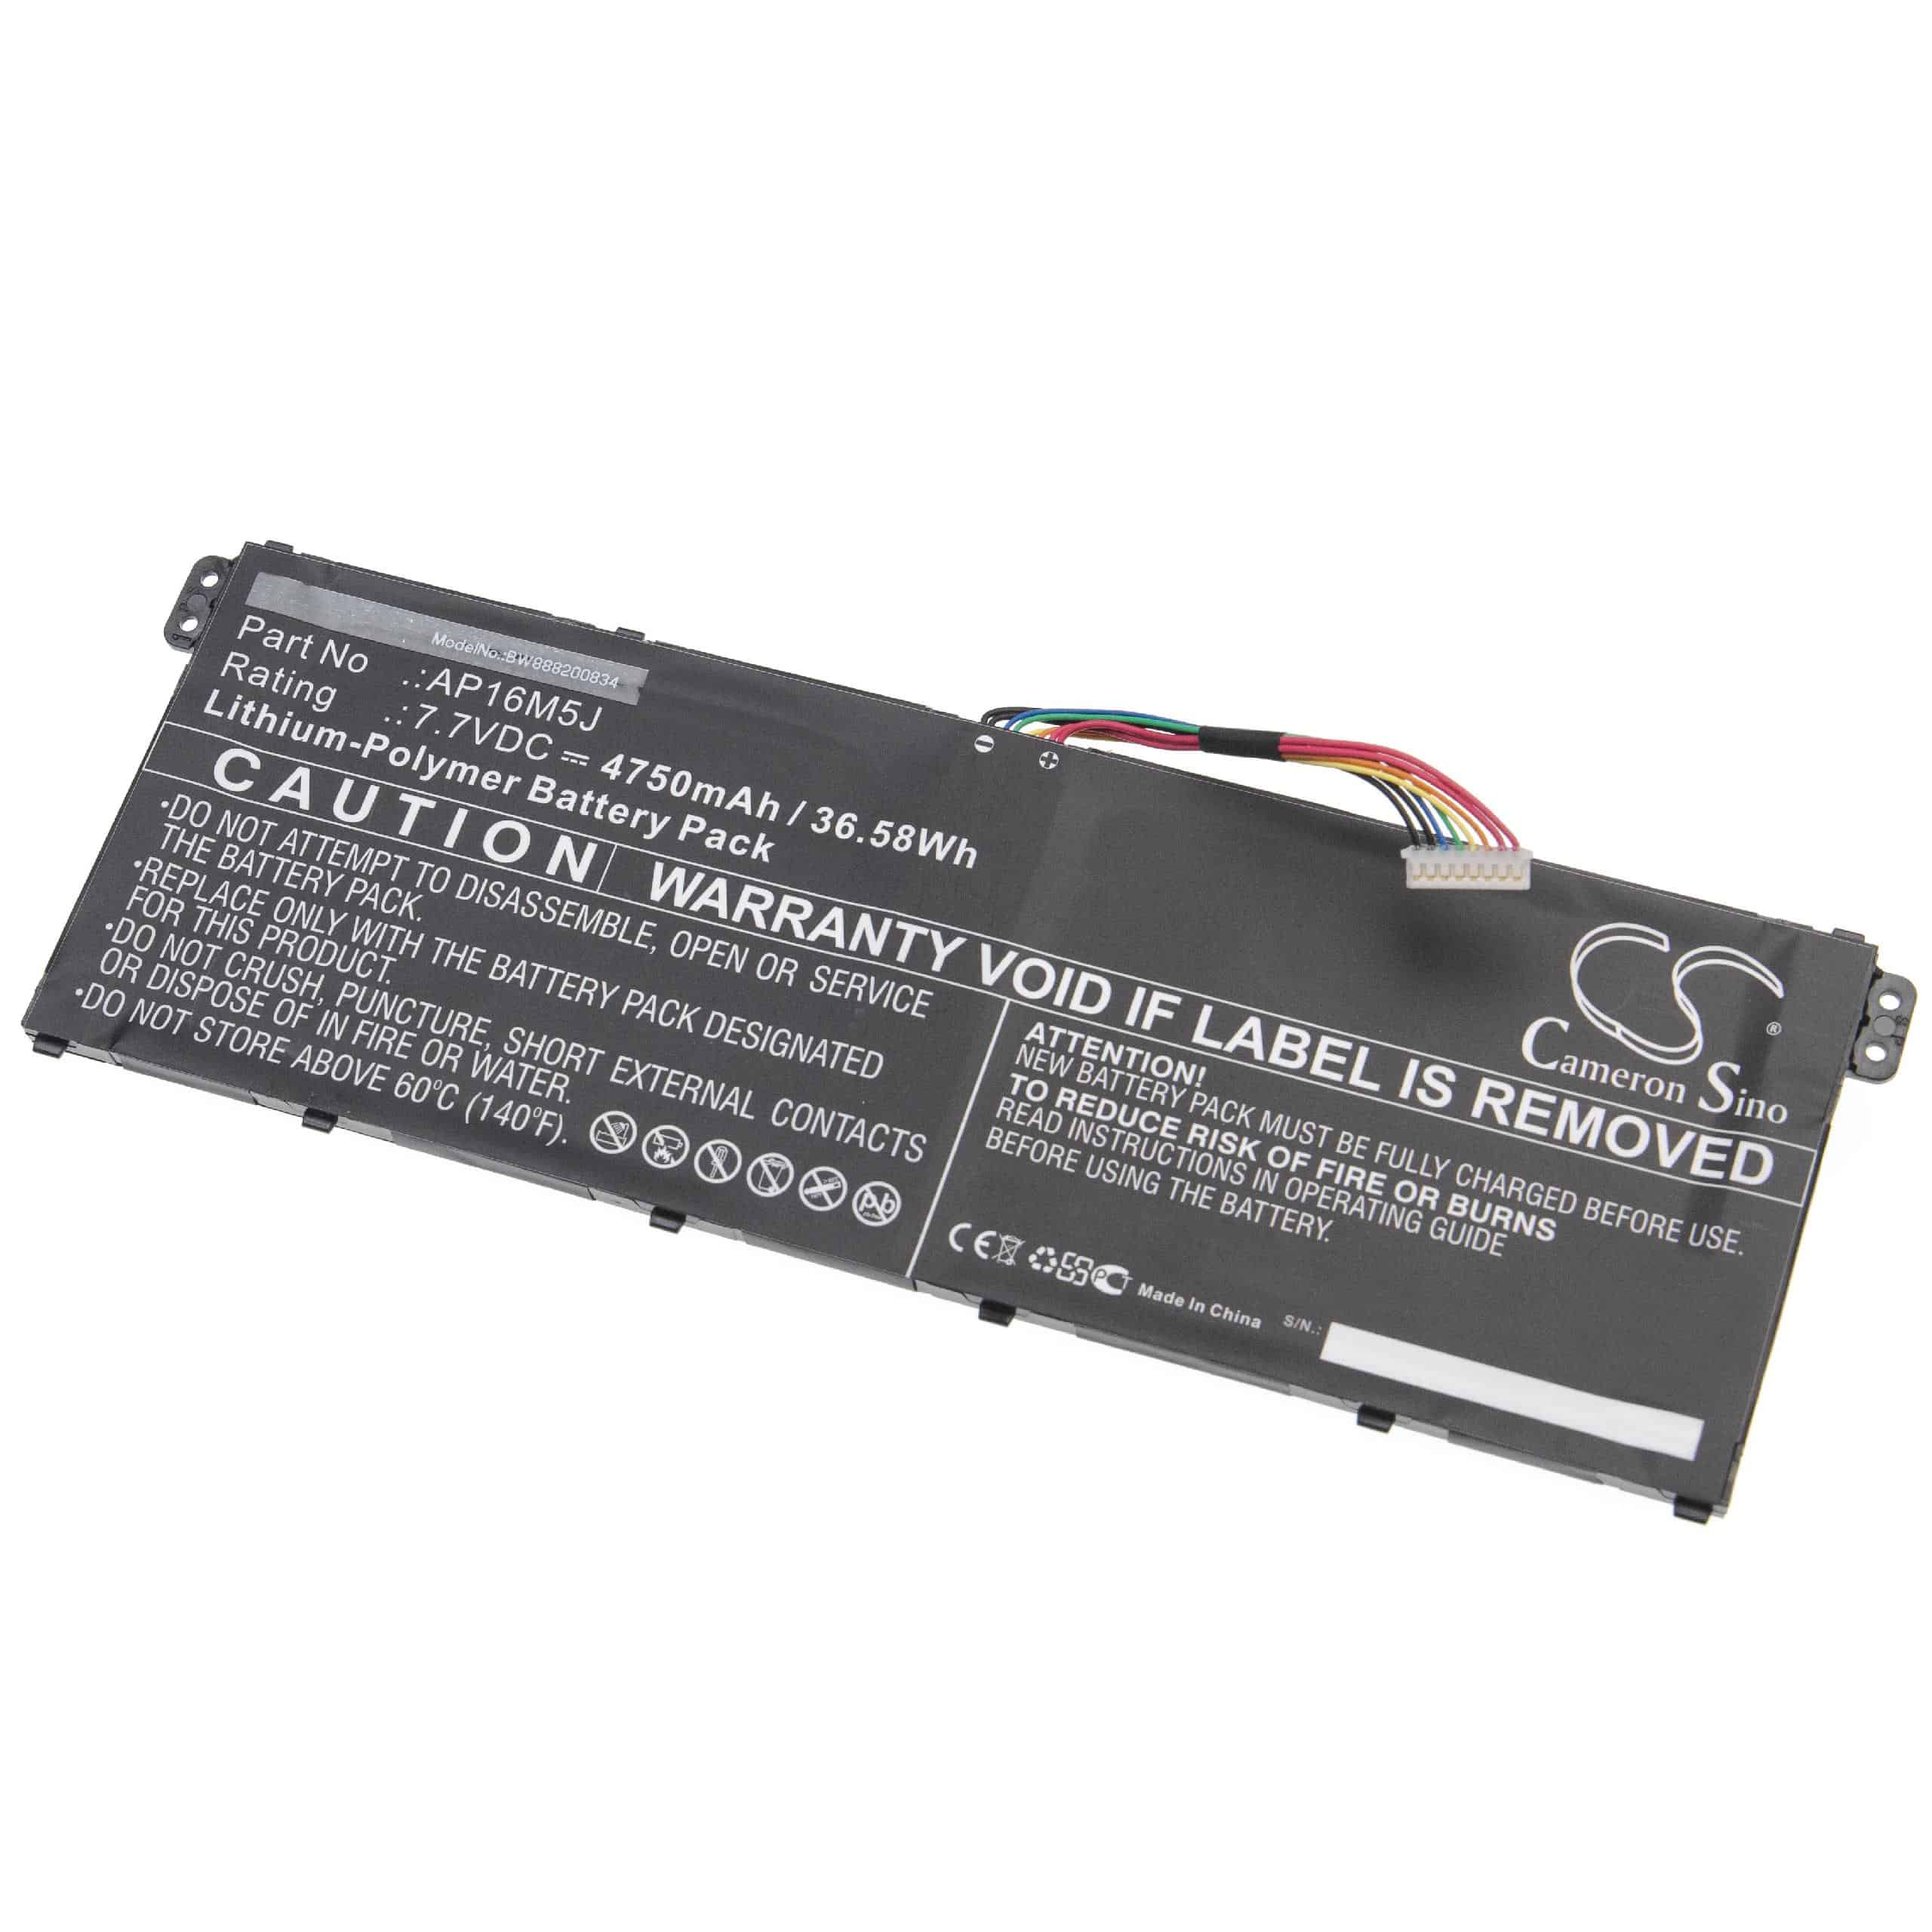 Notebook Battery Replacement for Acer AP16M5J, KT.00205.004, KT.00205.005 - 4750mAh 7.7V Li-polymer, black